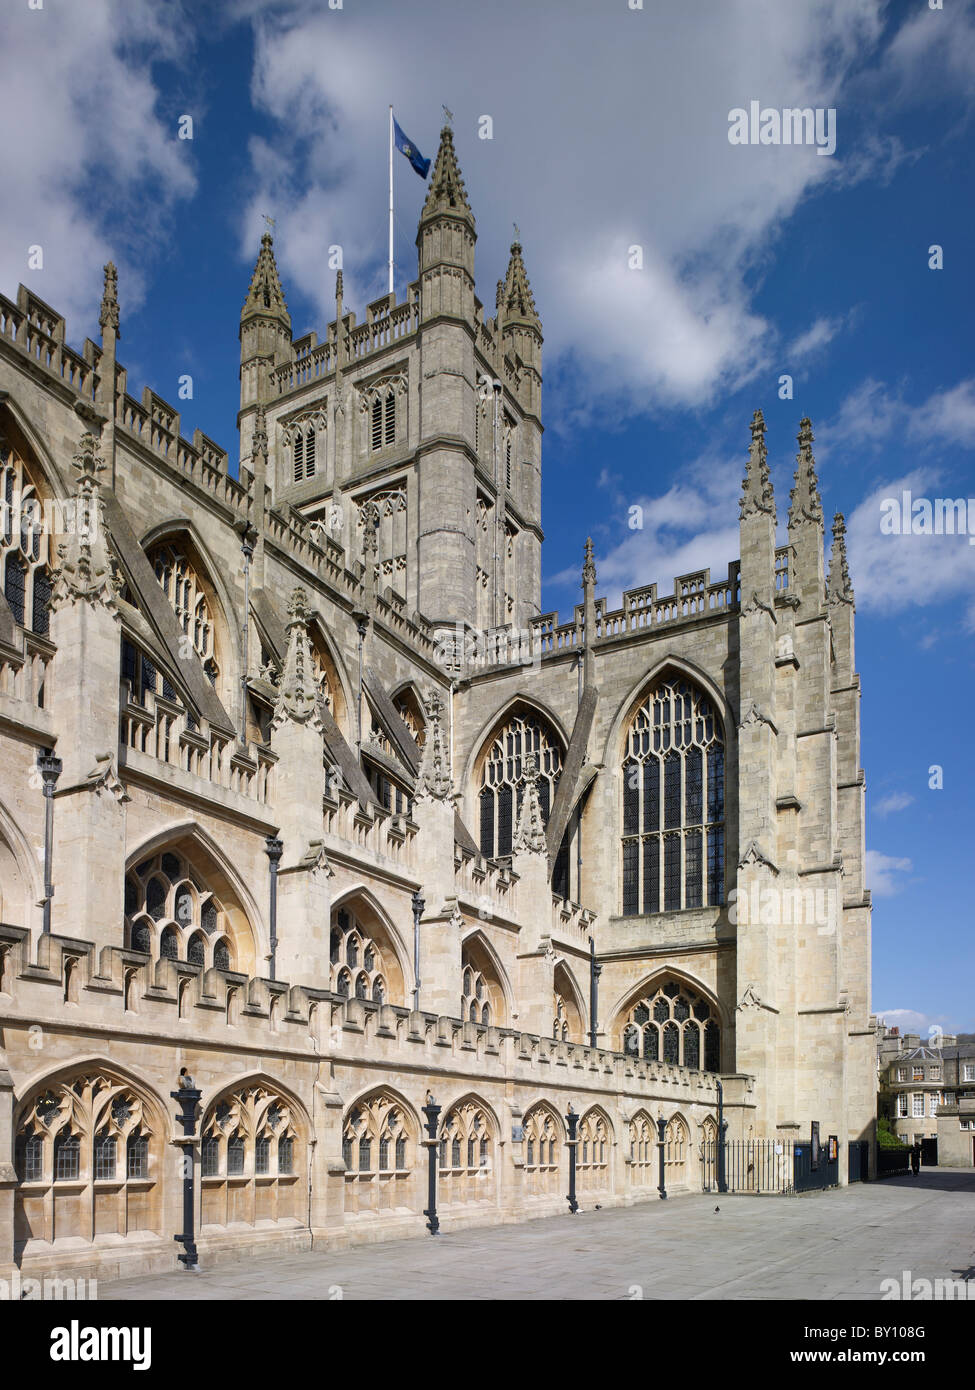 La Abadía de Bath, fachada y torre sur Foto de stock